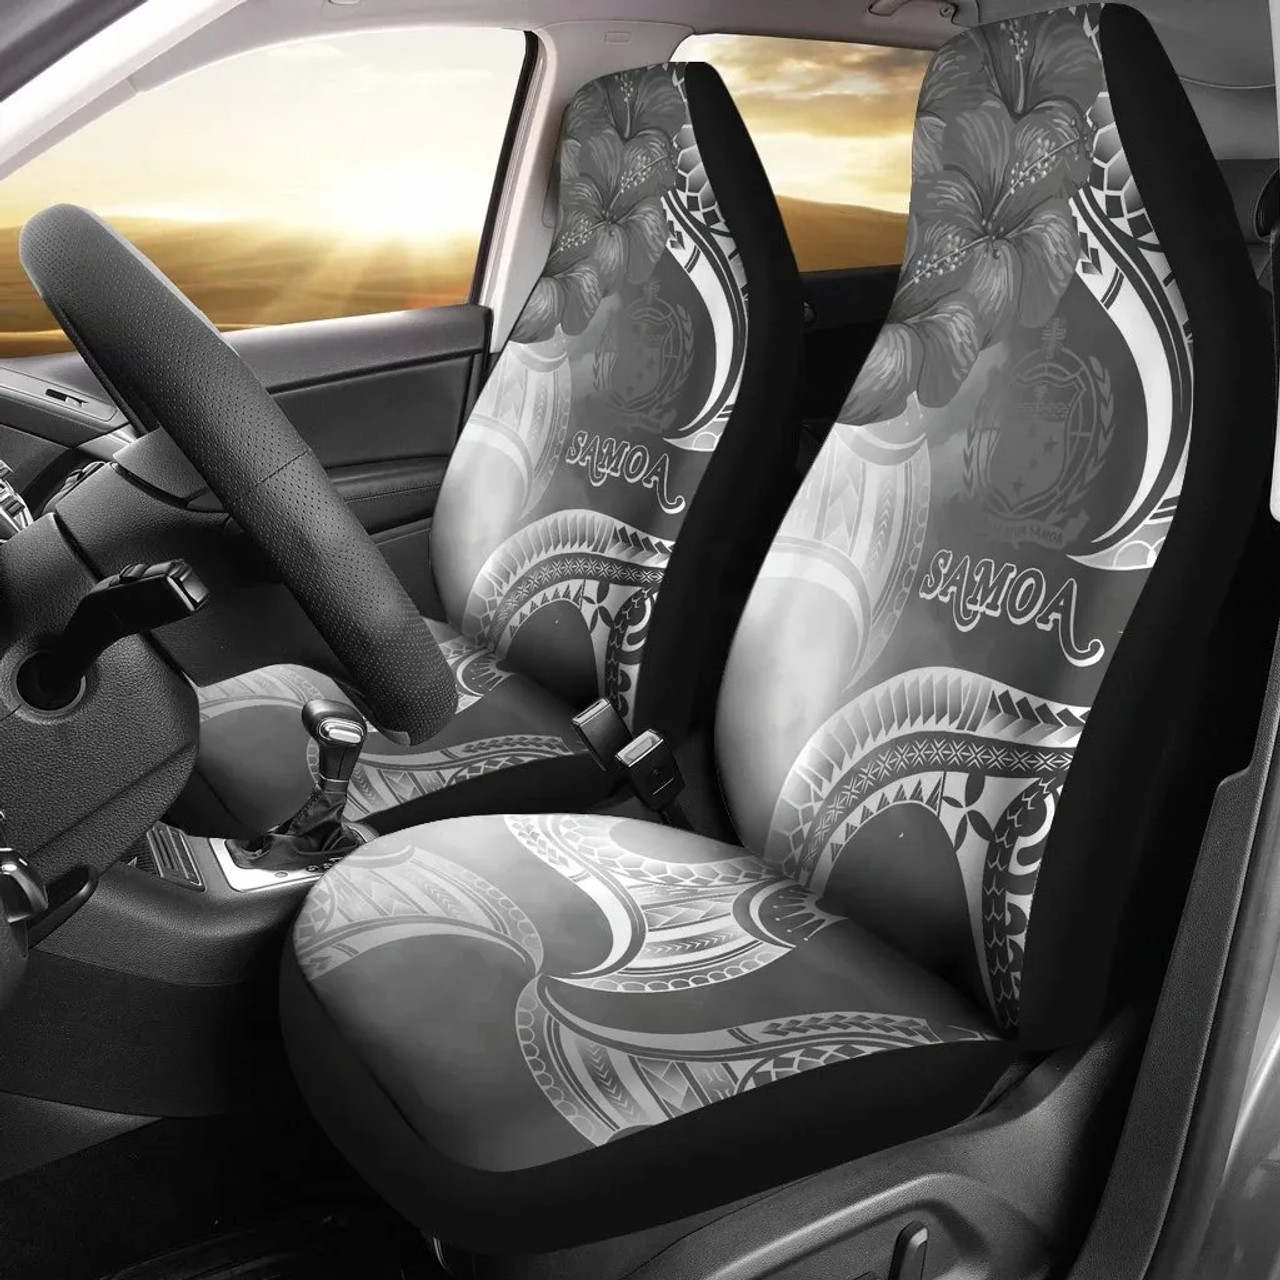 Samoa Car Seat Covers - Samoa Seal Wave Style (Black)